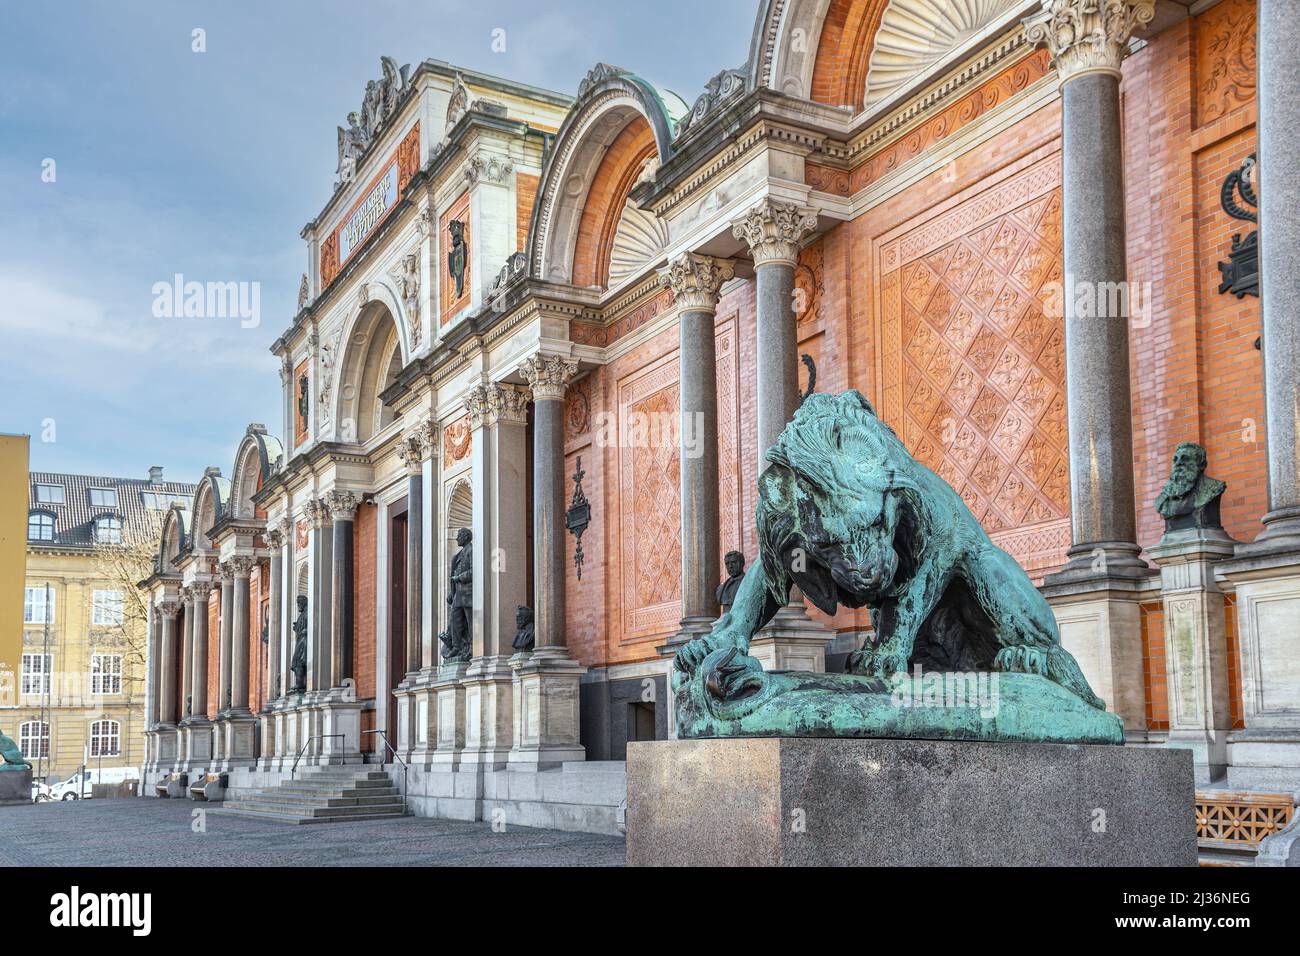 Fassade des Museums, NY Carlsberg Glyptotek, der bildenden Kunst, im Vordergrund die Bronzestatue eines Löwen, der eine Schlange angreift. Kopenhagen, Dänemark Stockfoto